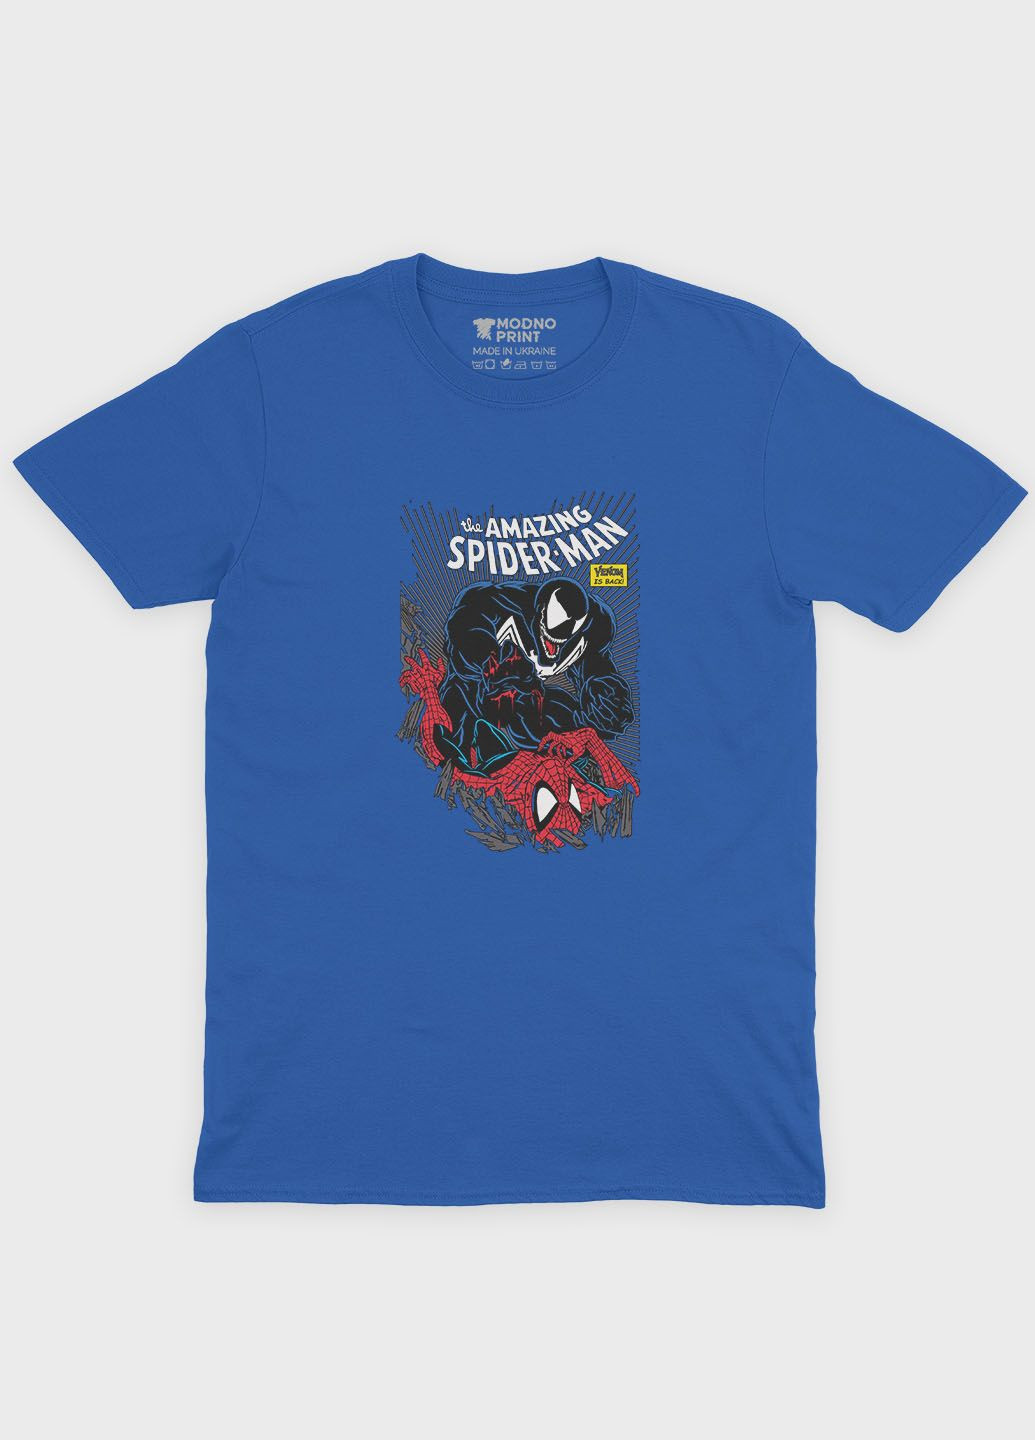 Синяя демисезонная футболка для мальчика с принтом супергероя - человек-паук (ts001-1-brr-006-014-052-b) Modno